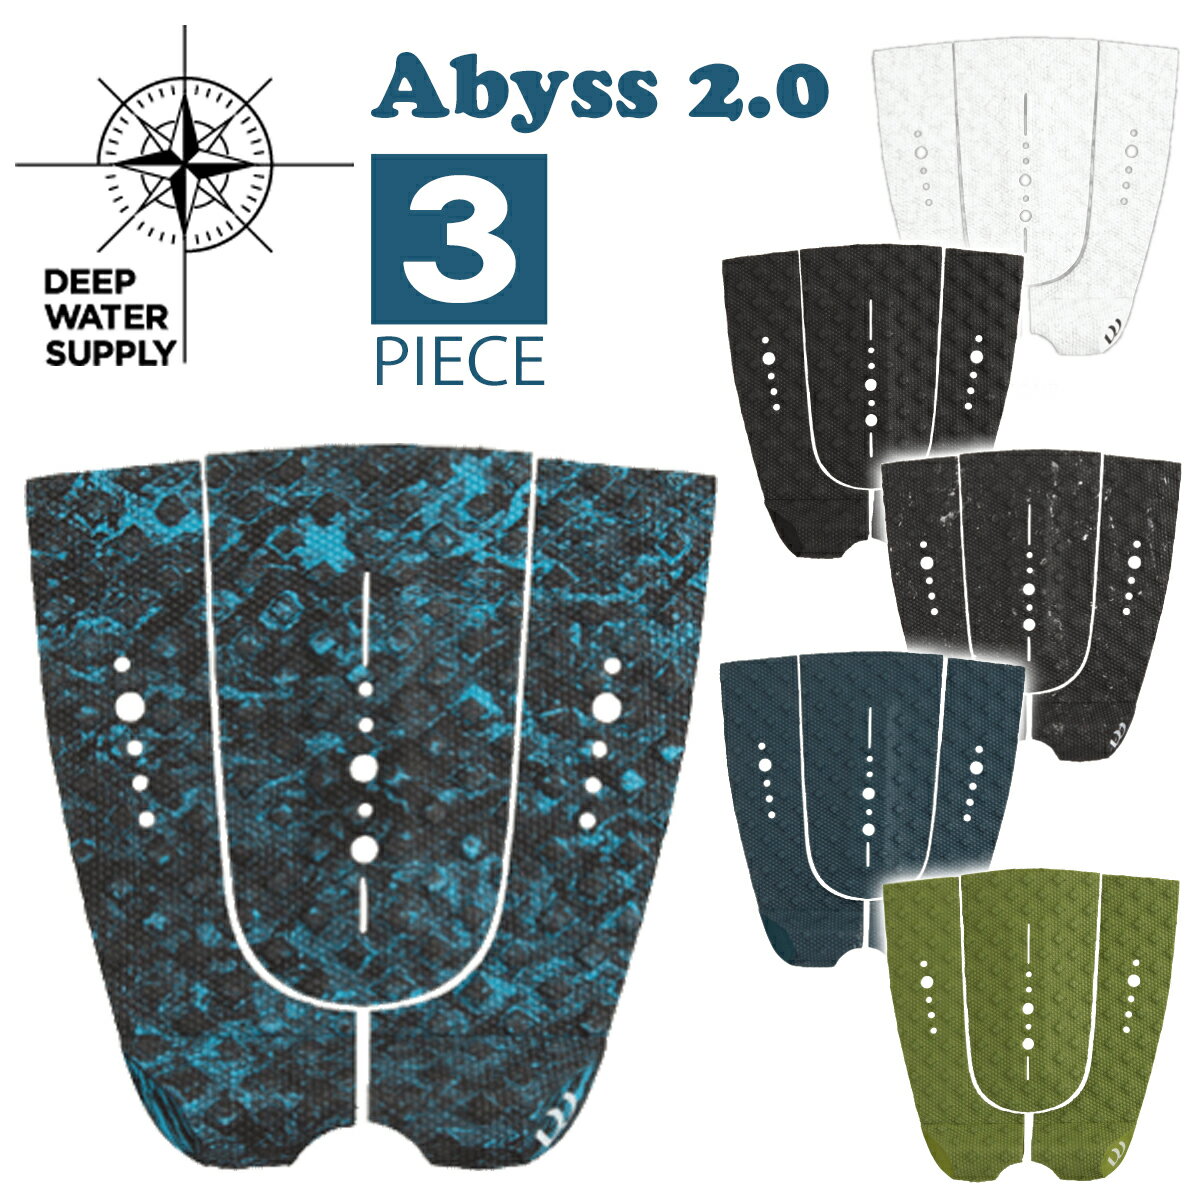 DEEP WATER SUPPLY ディープウォーターサプライ デッキパッド Abyss 2.0 アビス 3ピース デッキパッチ トラクションパッド サーフィン グッズ 日本正規品